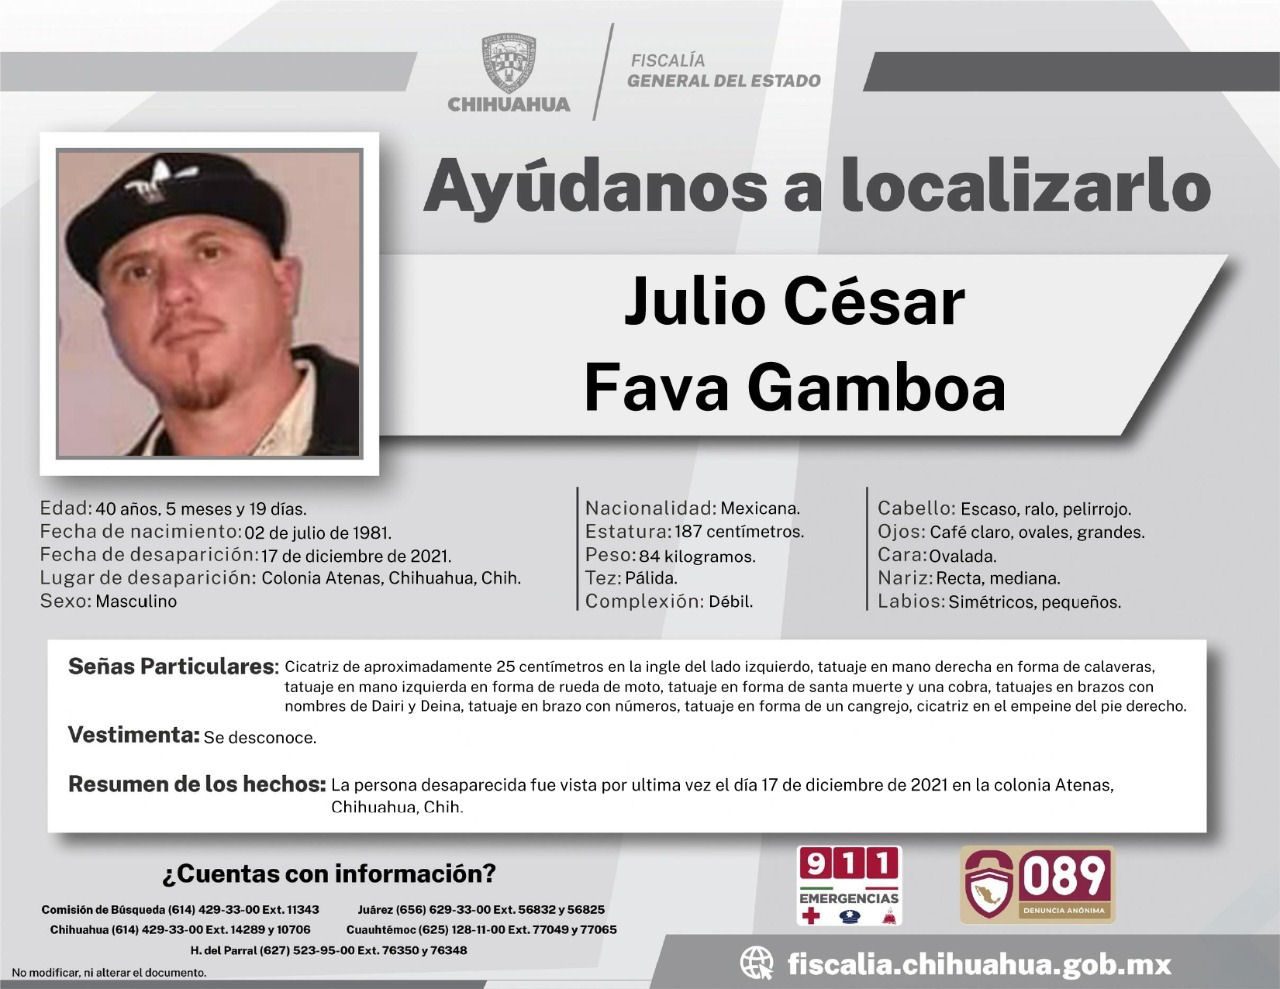 Solicitan colaboración para localizar a Julio César Fava Gamboa